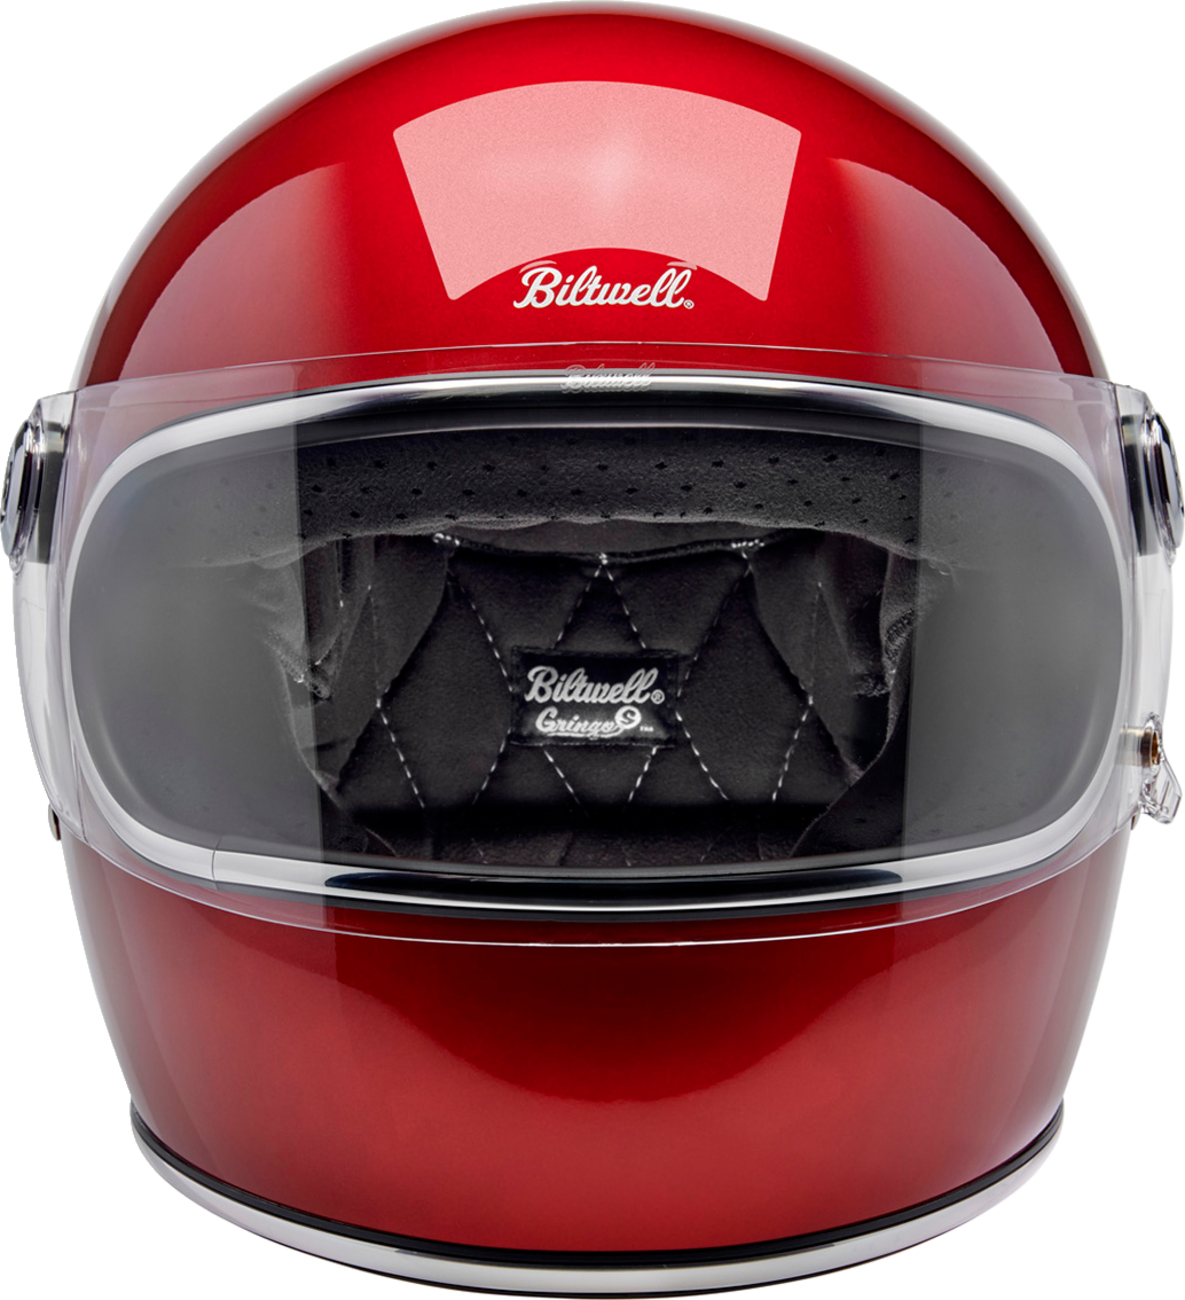 BILTWELL Gringo S Helmet - Metallic Cherry Red - XL 1003-351-505